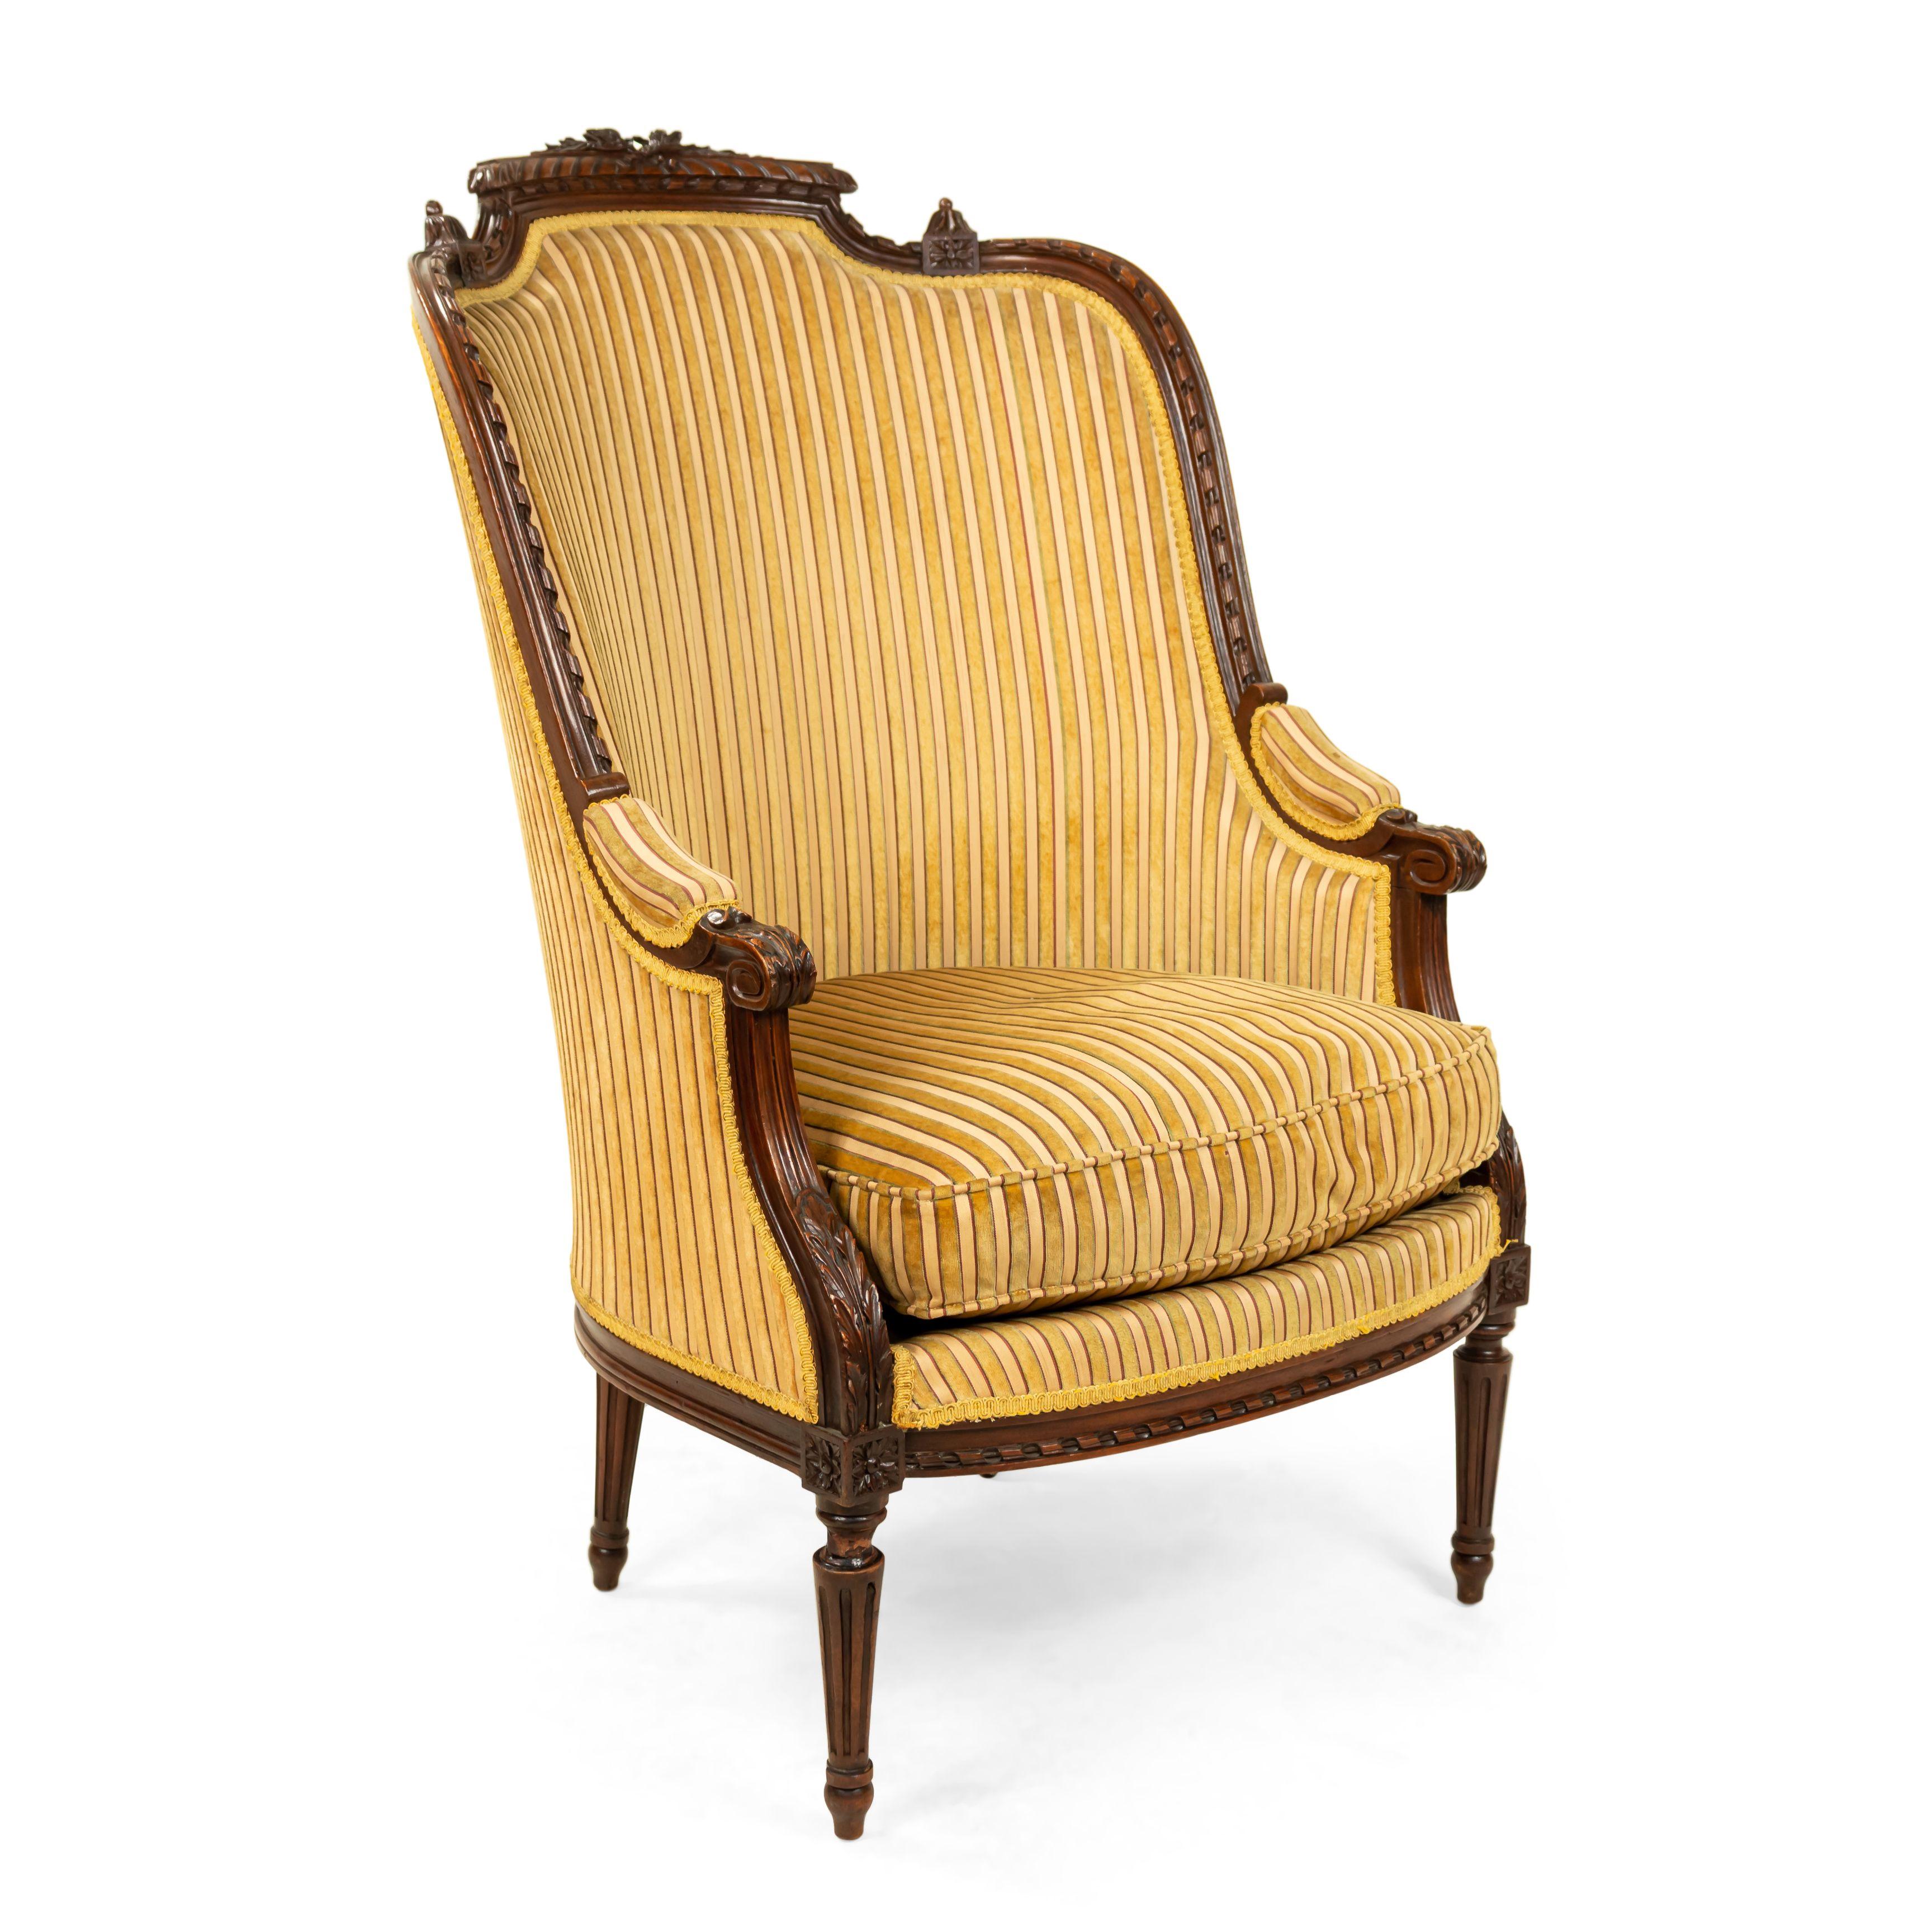 Paar französische Sessel im Louis-XVI-Stil (19. Jh.) aus Nussbaumholz mit gestreifter Polsterung und Bogenknoten.